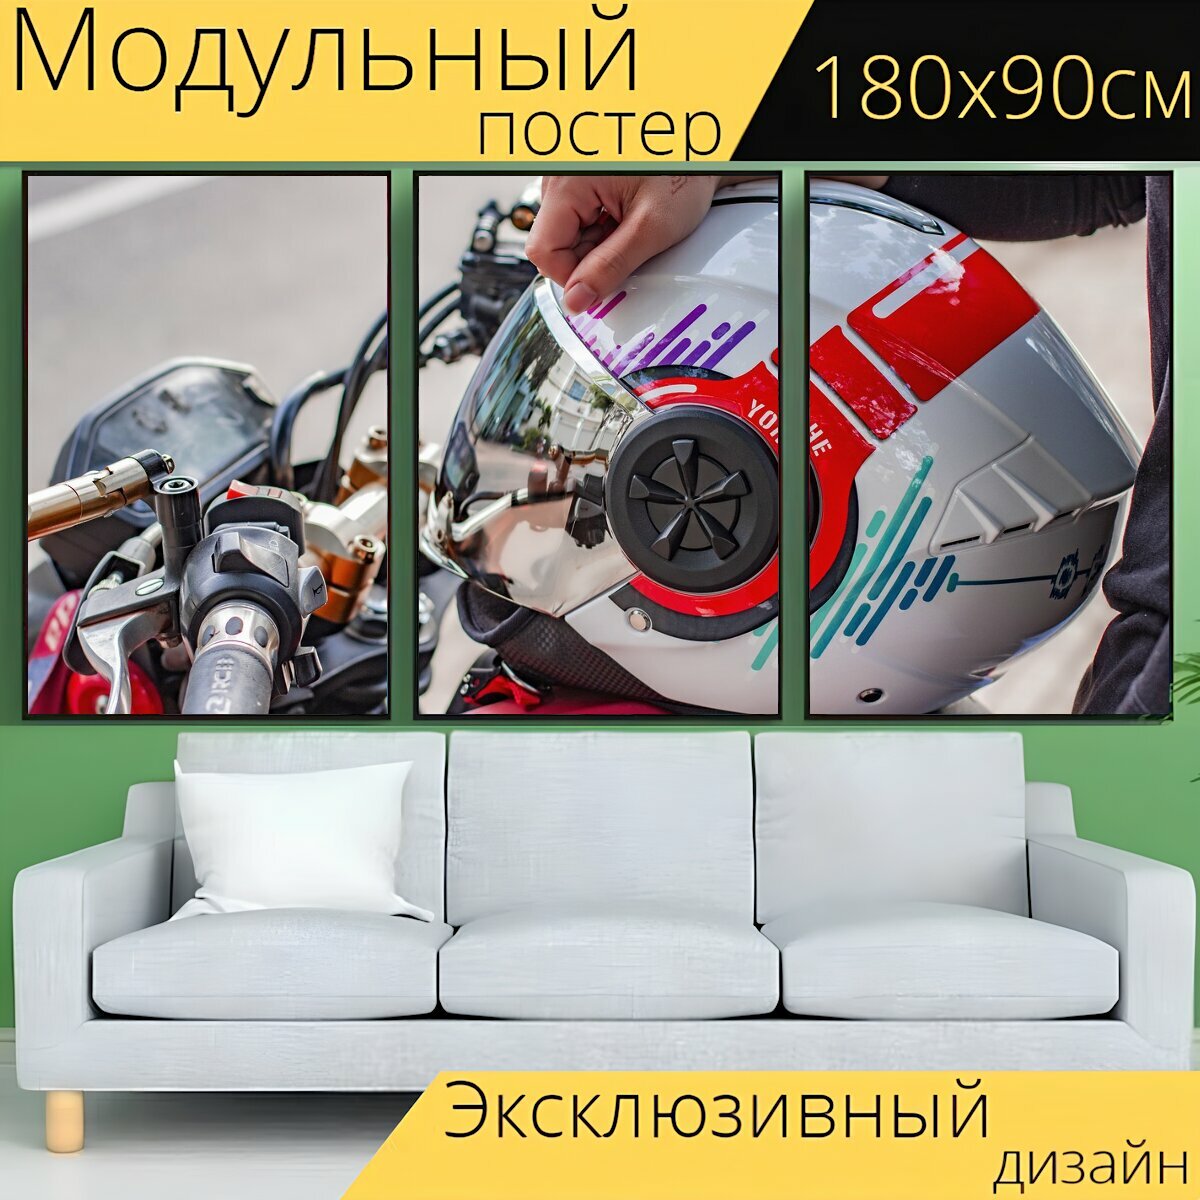 Модульный постер "Шлемы, мотоциклетные шлемы, шлем" 180 x 90 см. для интерьера